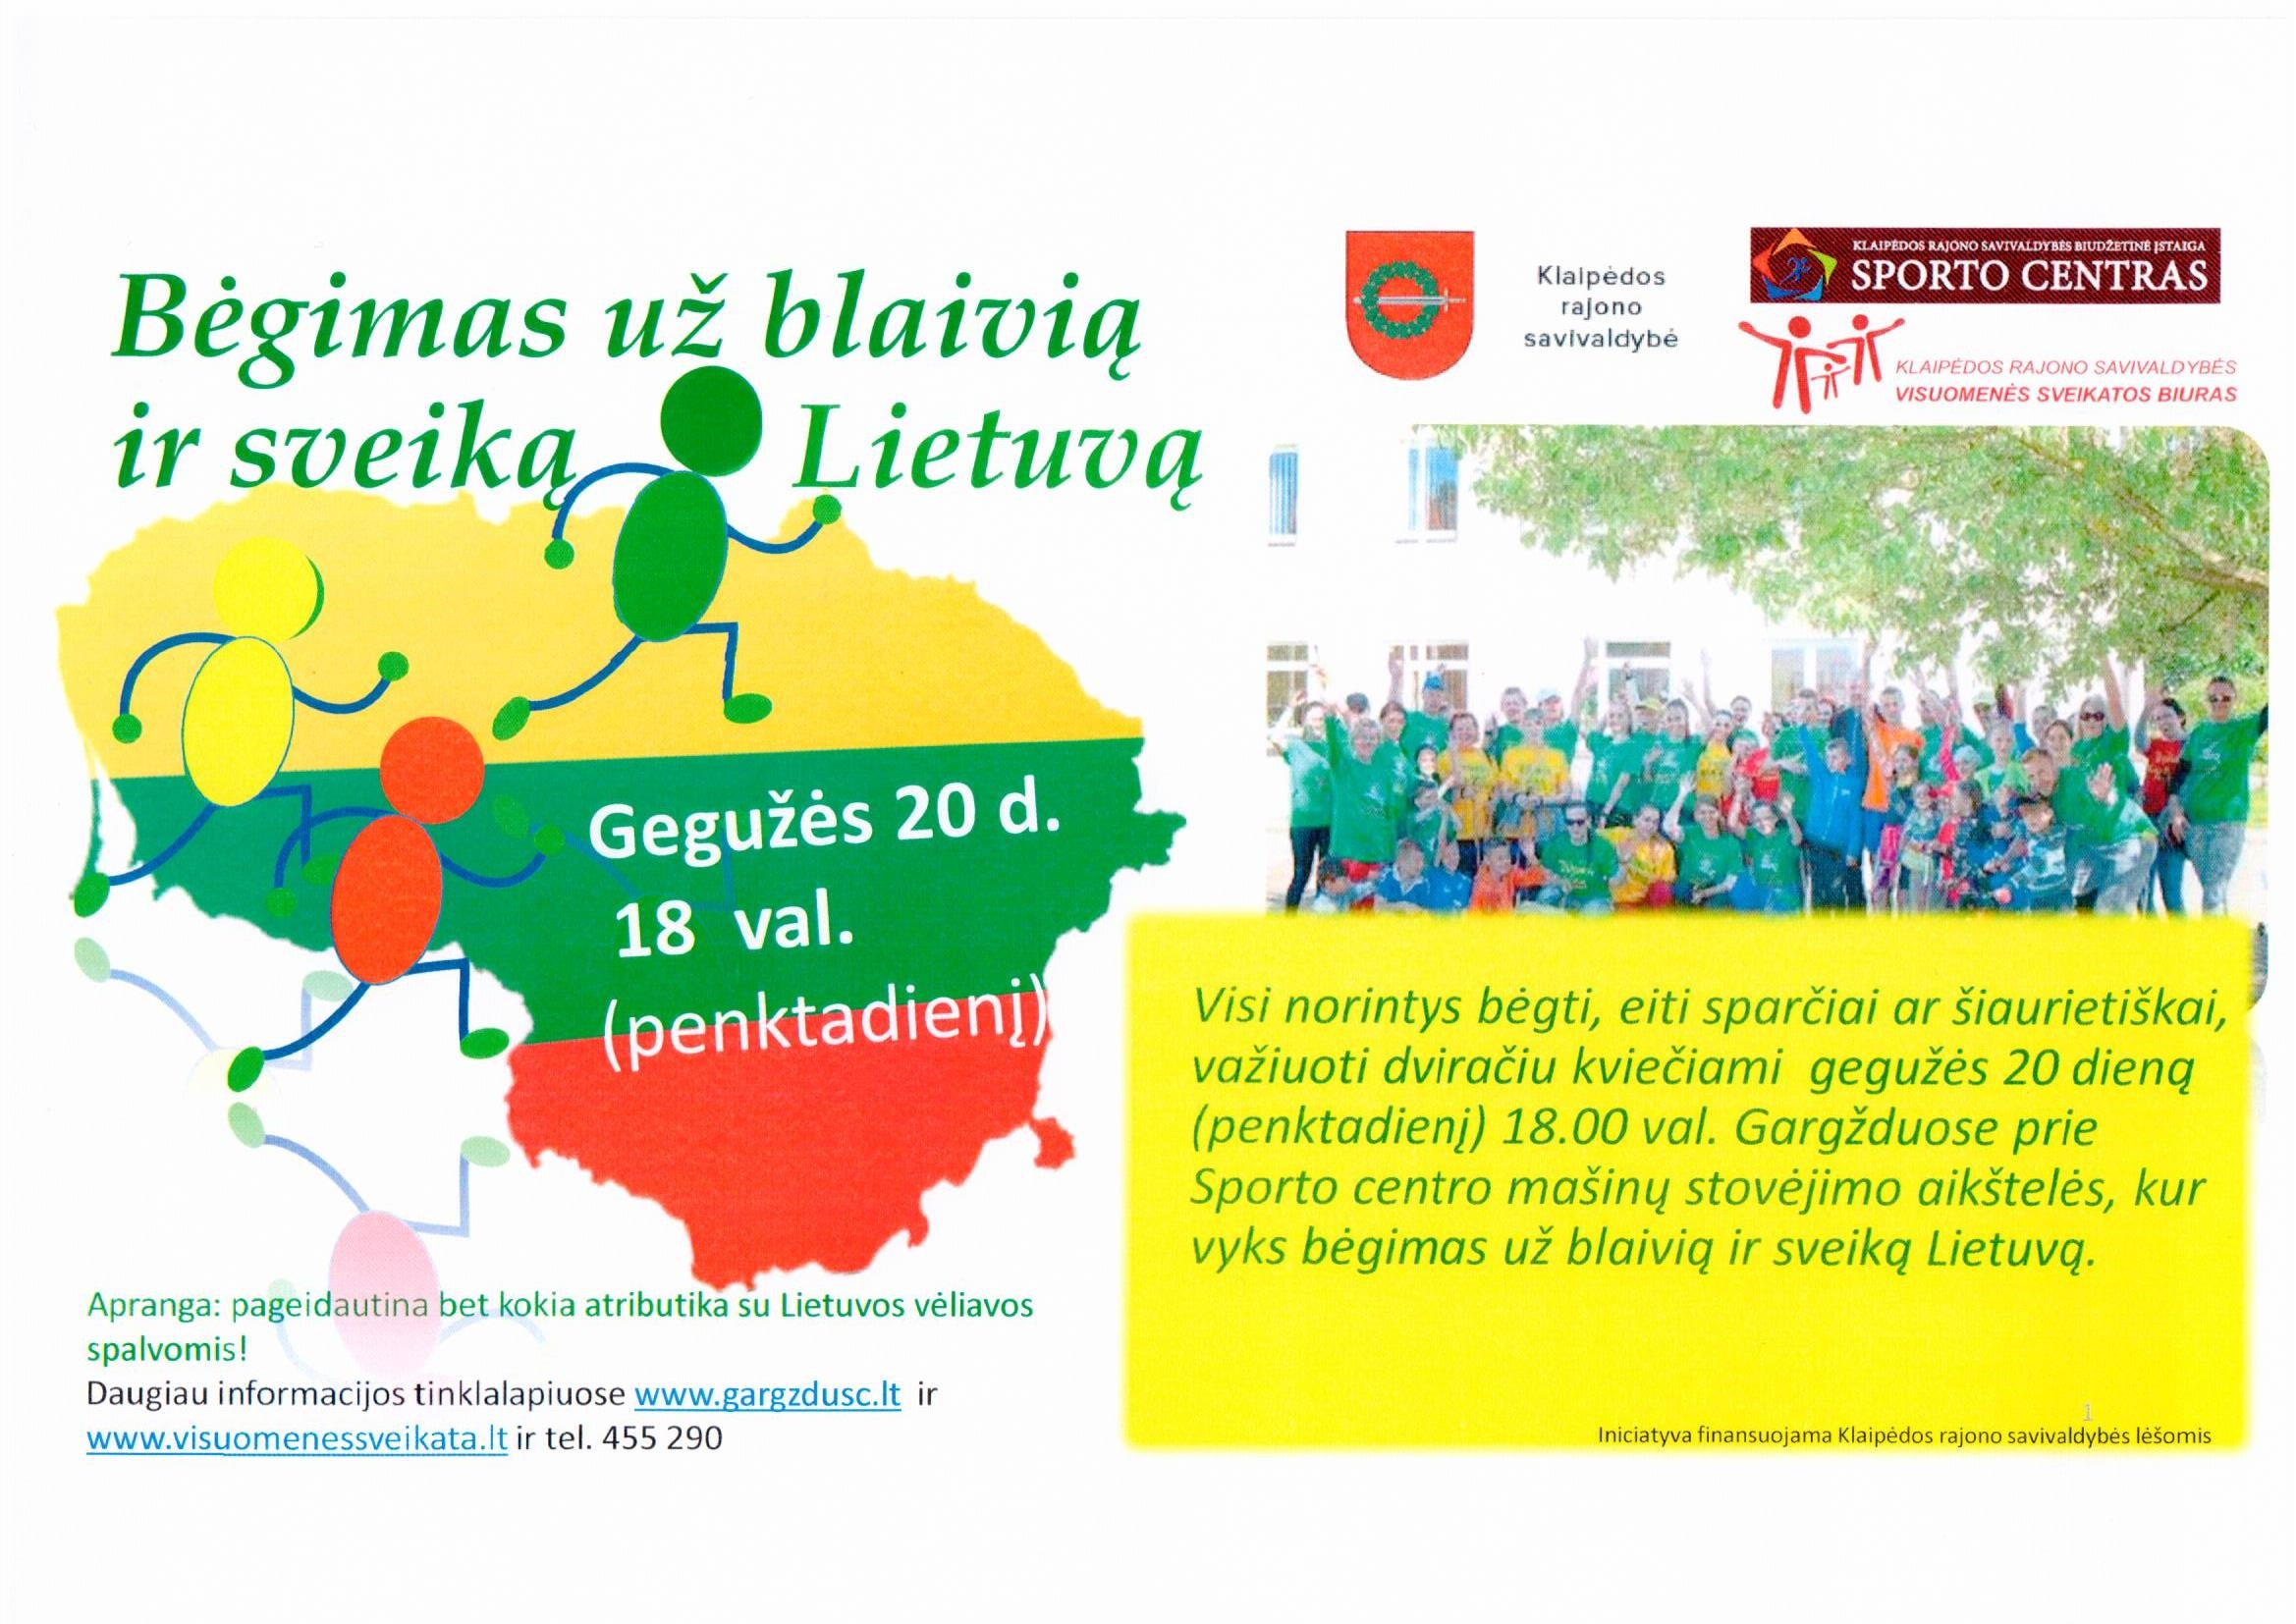 Bėk už blaivią ir sveiką Lietuvą!